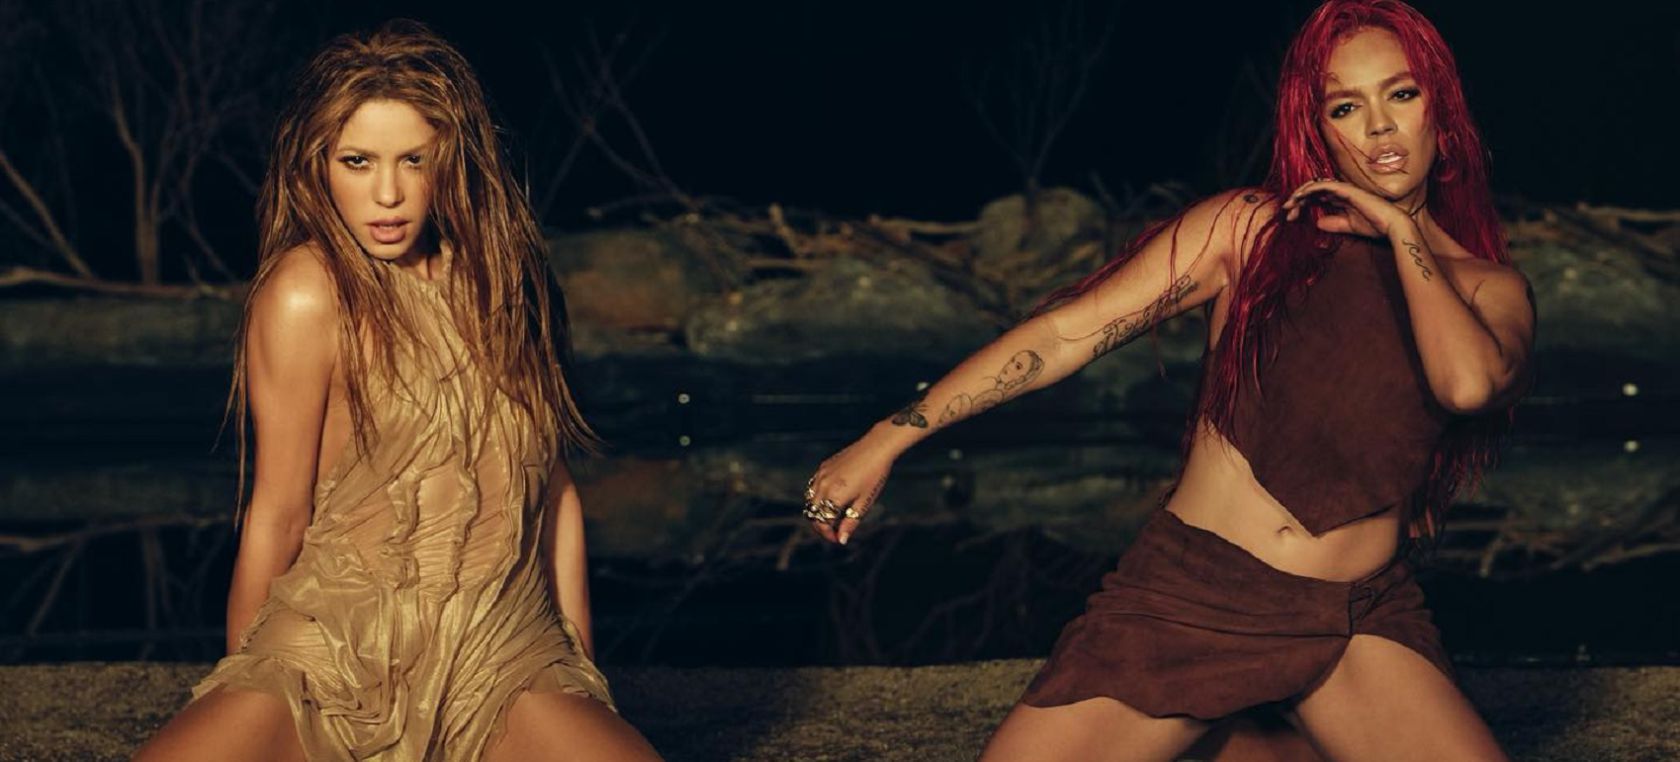 Nueva canción de Shakira y Karol G: “Más buena, más dura, más level”